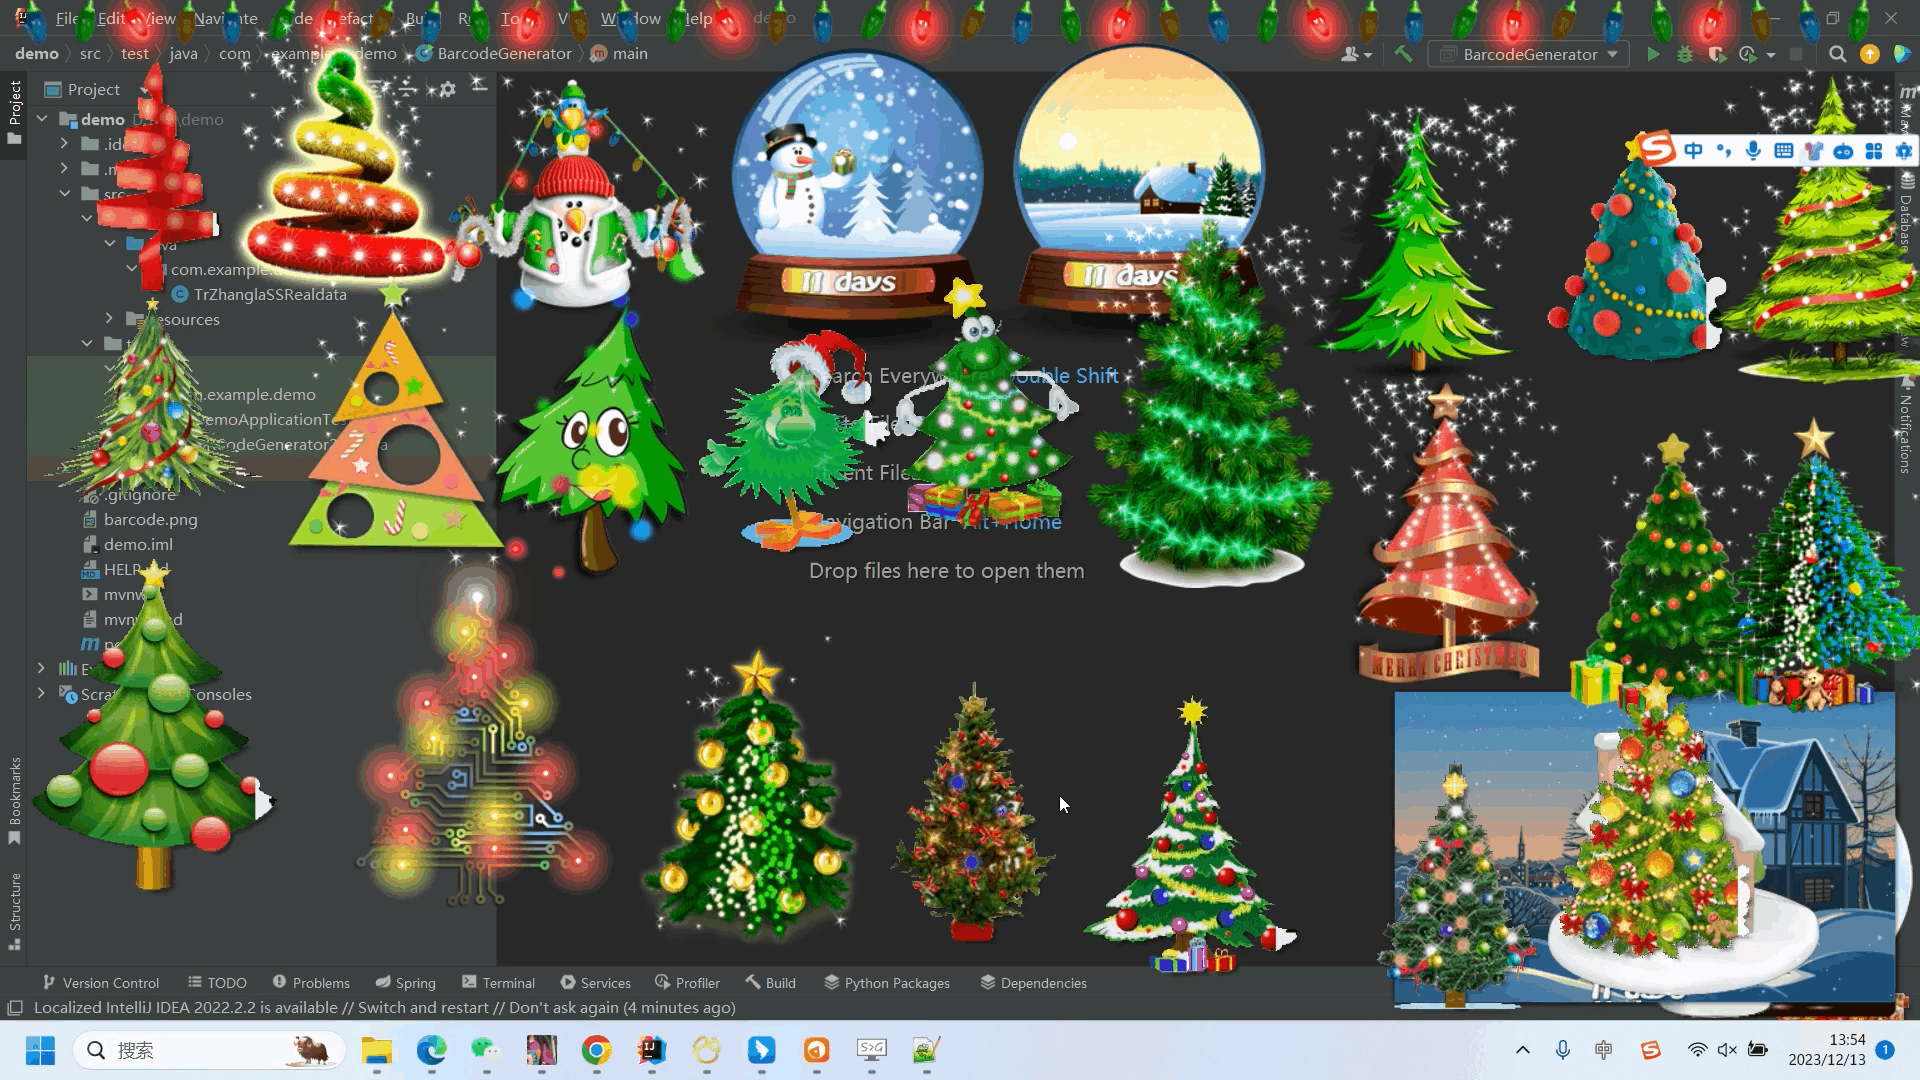 圣诞节酷炫特效合集【含十几个HTML+CSS前端特效+34个桌面酷炫圣诞程序】